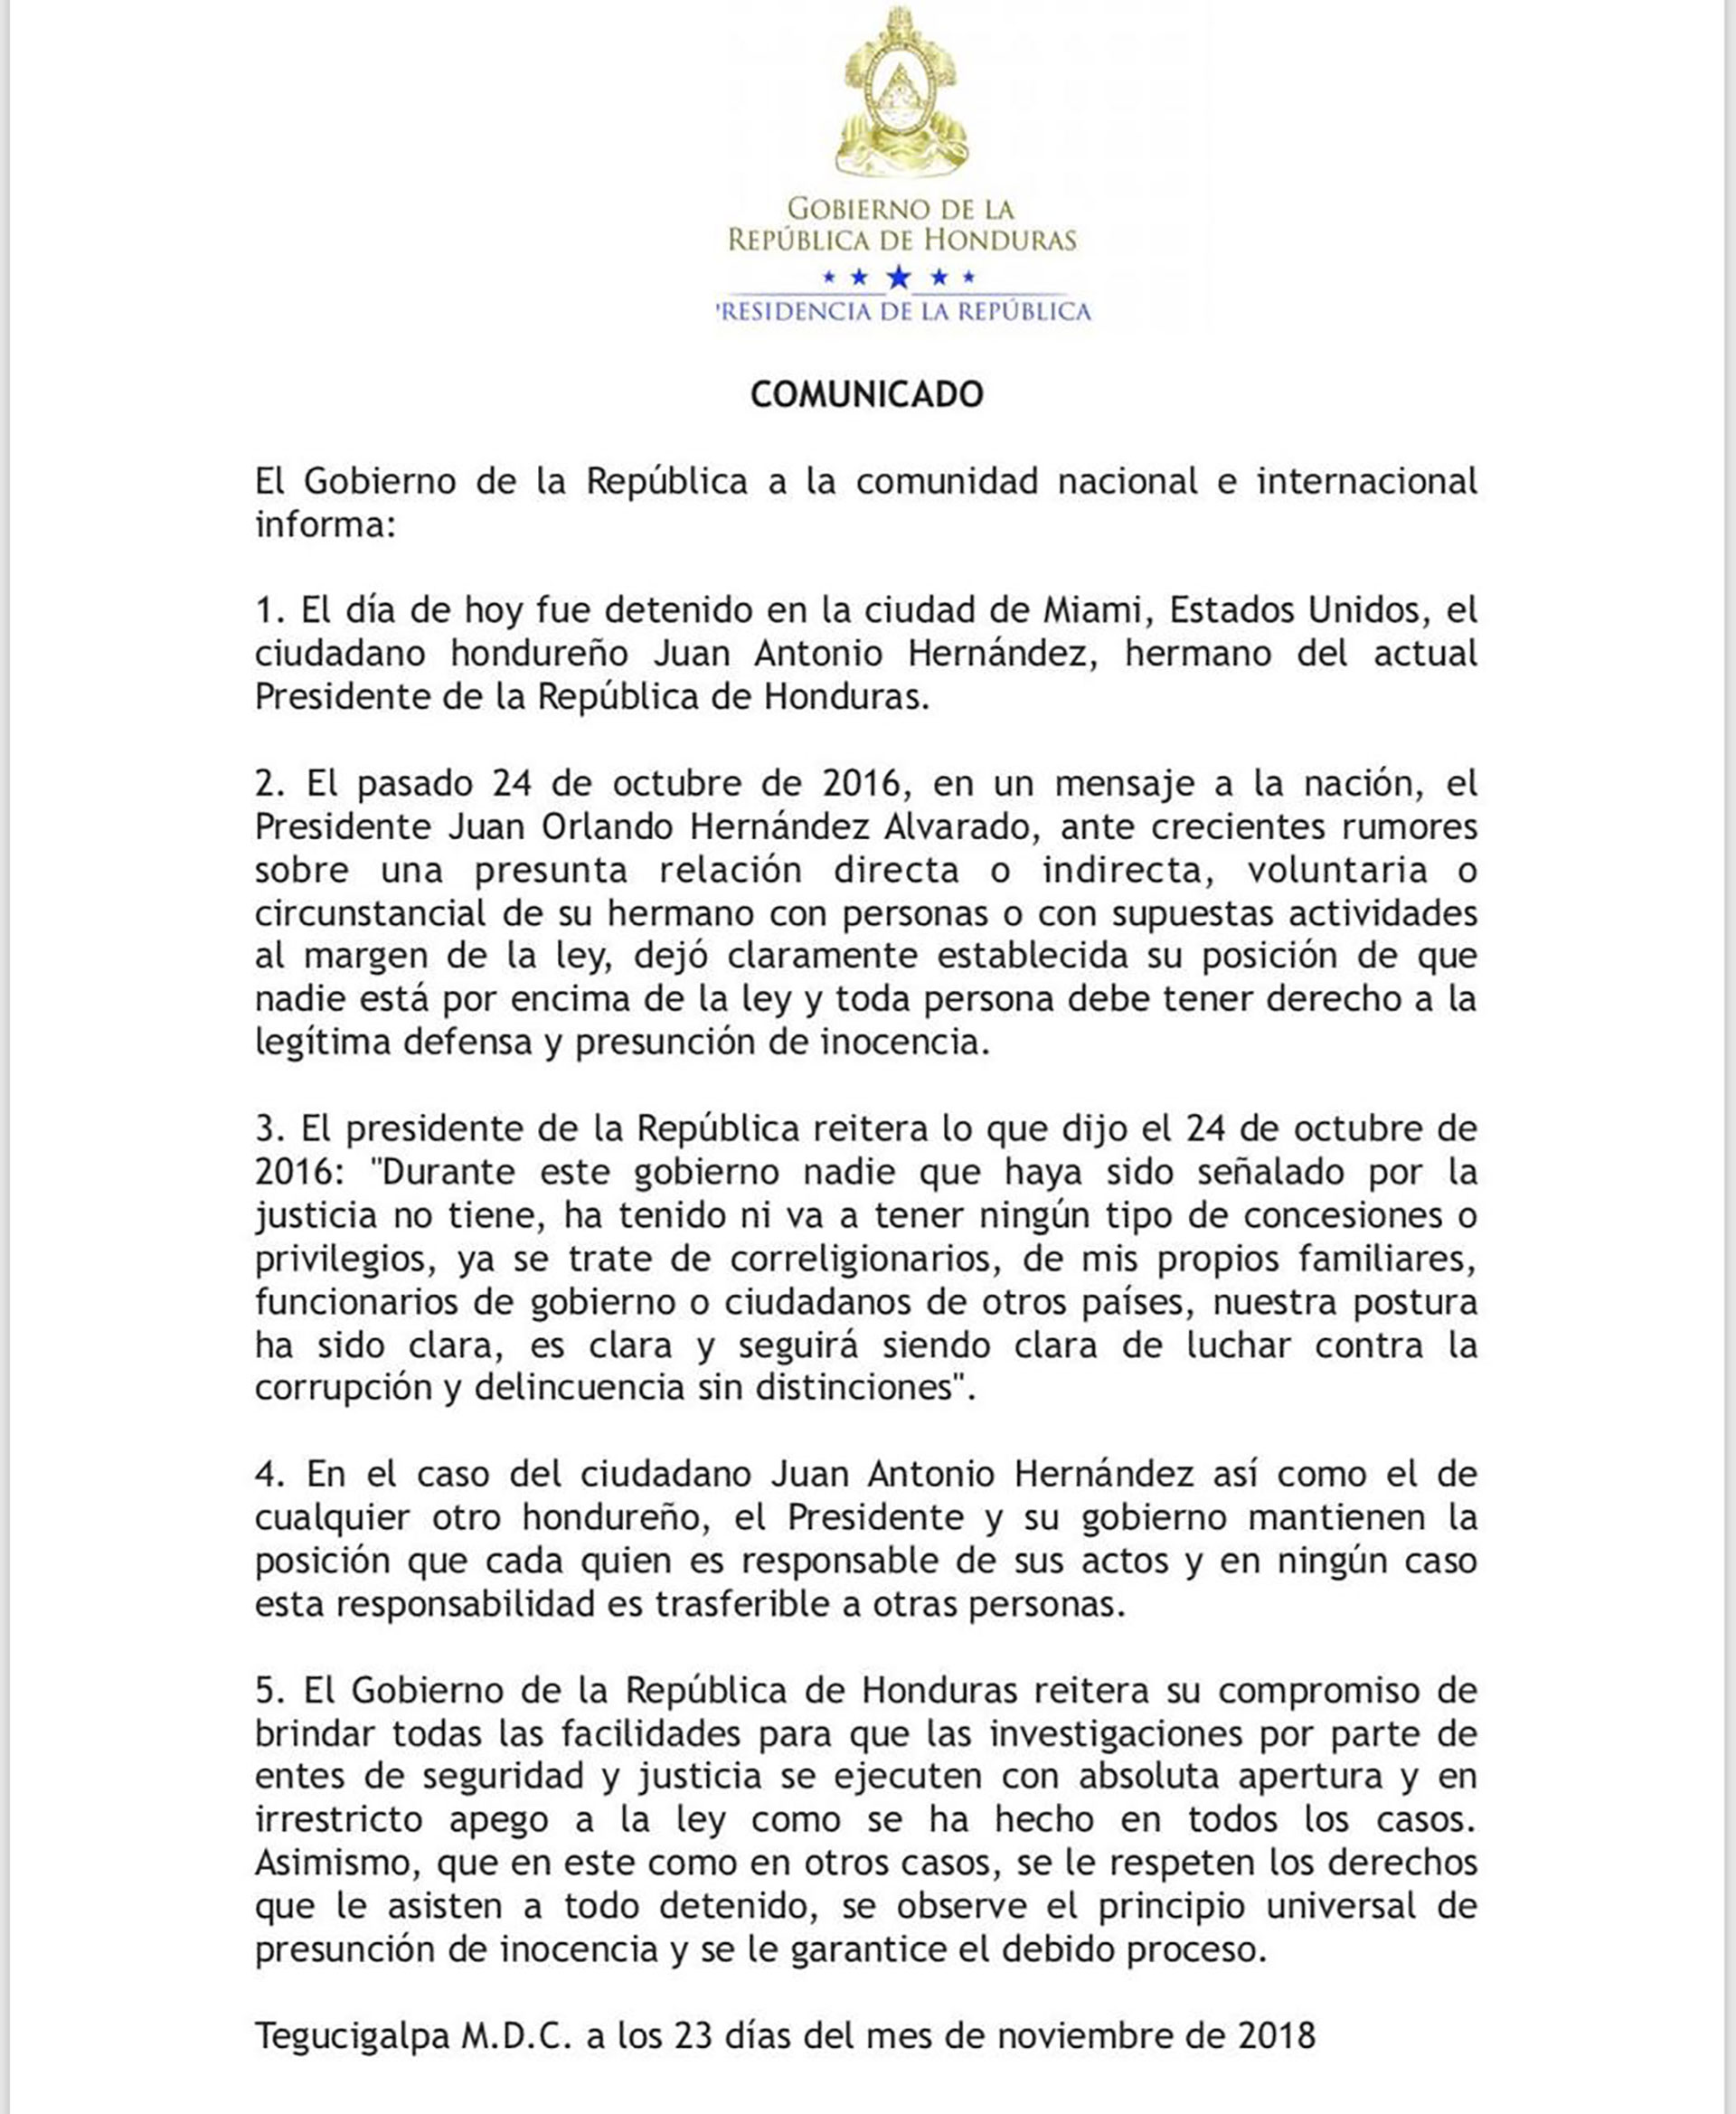 El comunicado del gobierno de Honduras